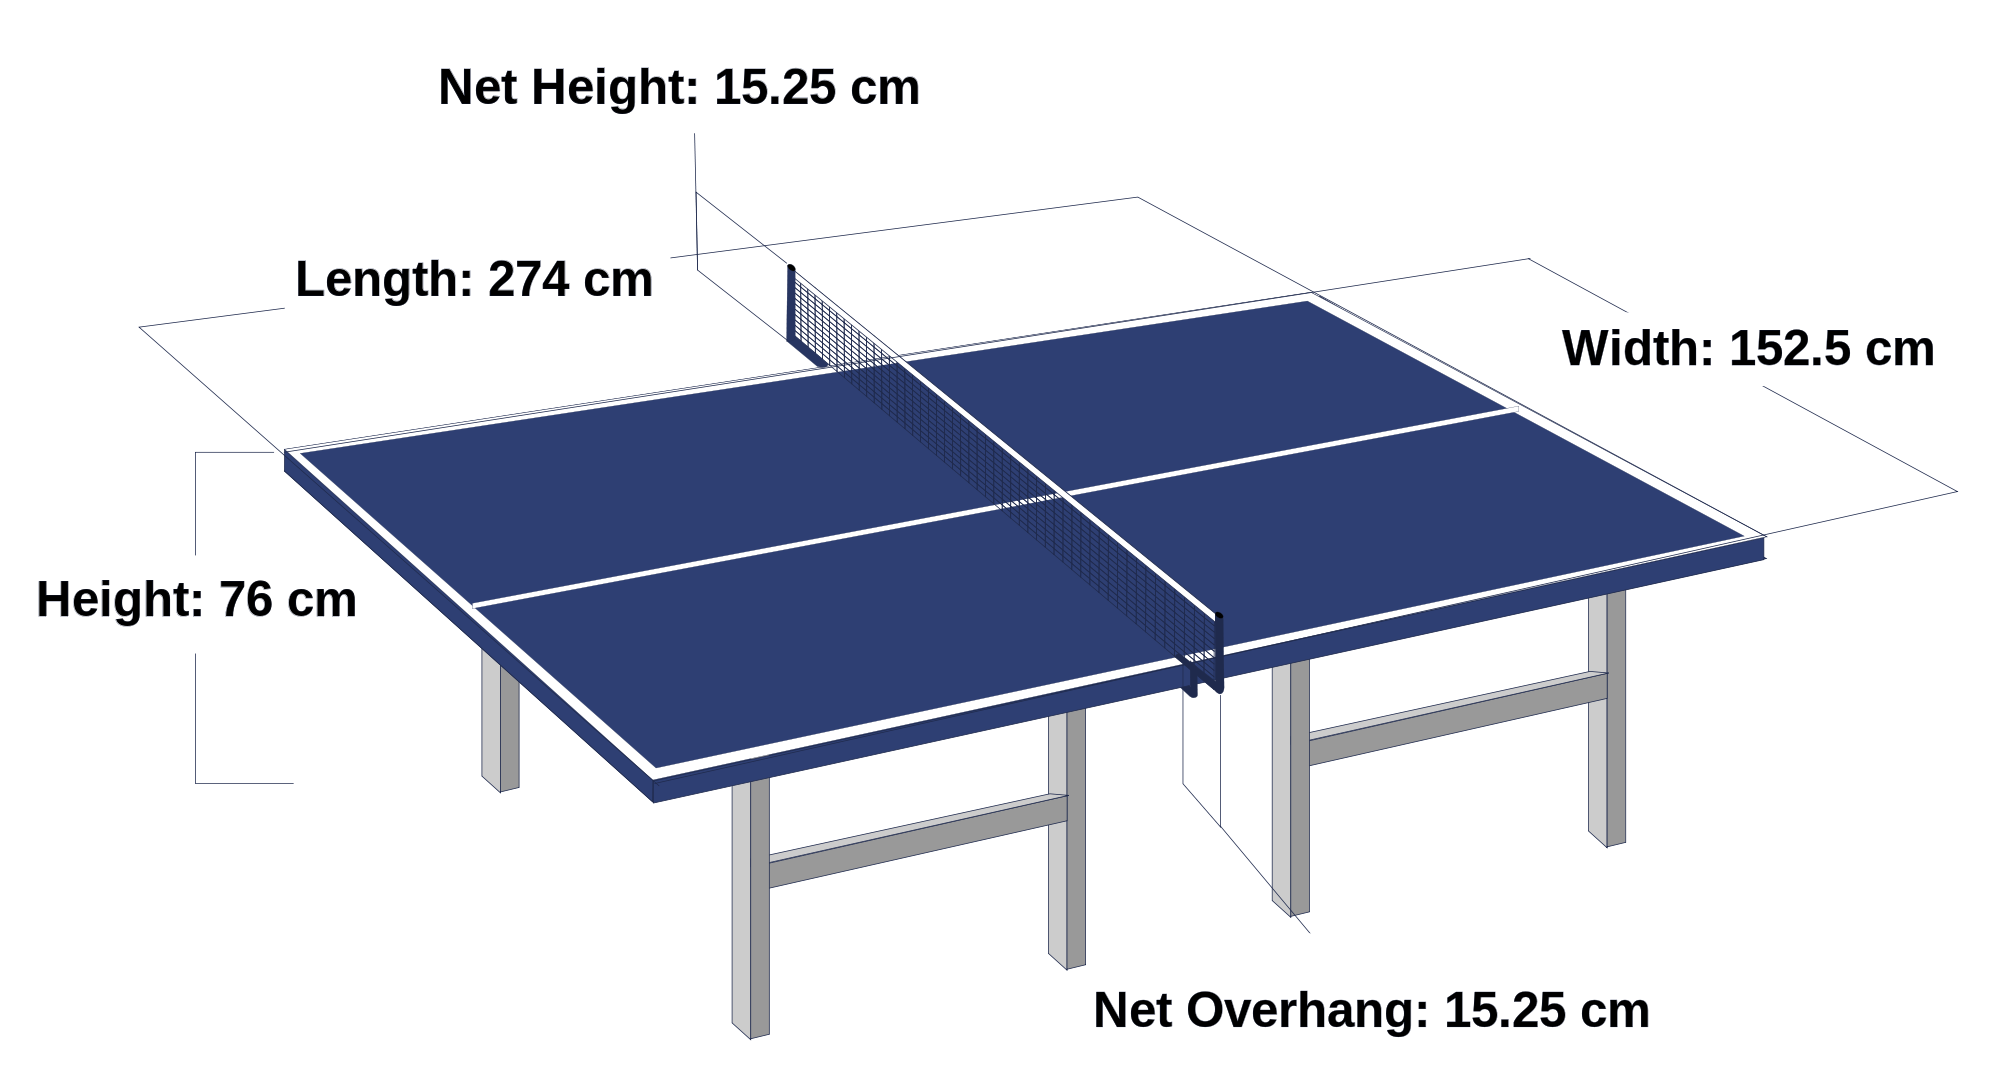 Размеры теннисного стола для настольного тенниса стандарт. Размеры настольного теннисного стола стандарт. Размер теннисного стола для настольного тенниса. Габариты теннисного стола. Теннис настольный план